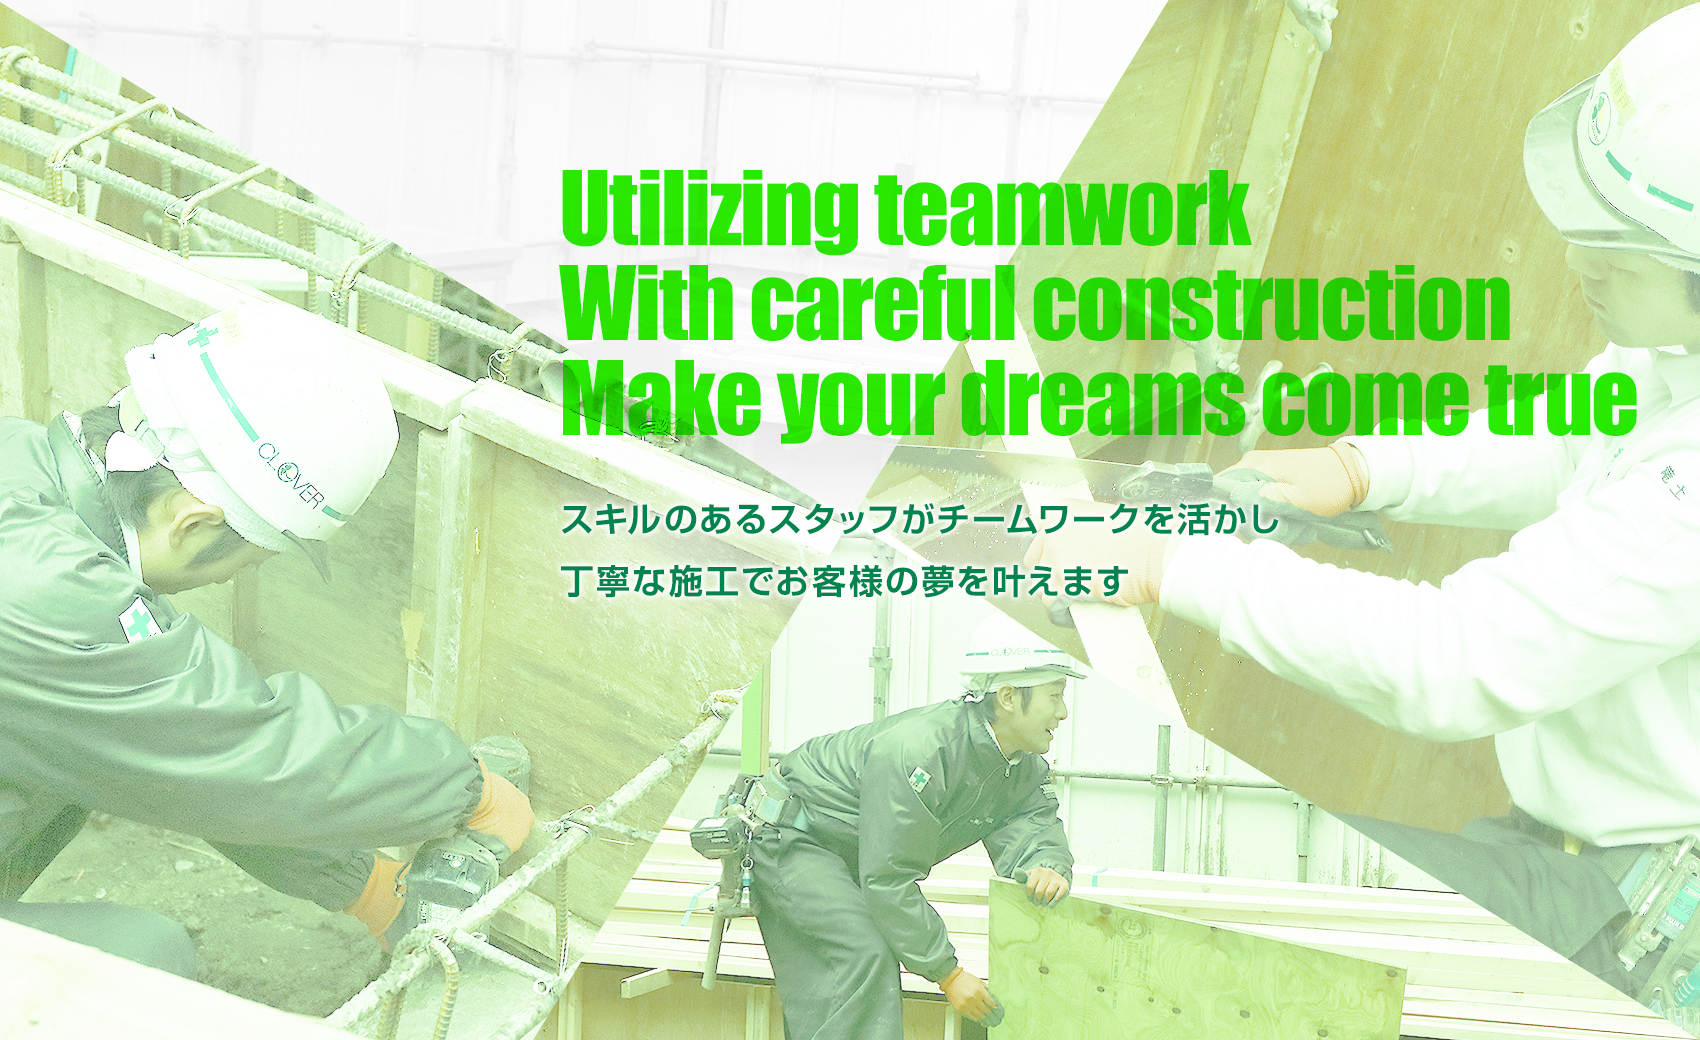 スキルのあるスタッフがチームワークを活かし、丁寧な施工でお客様の夢を叶えます